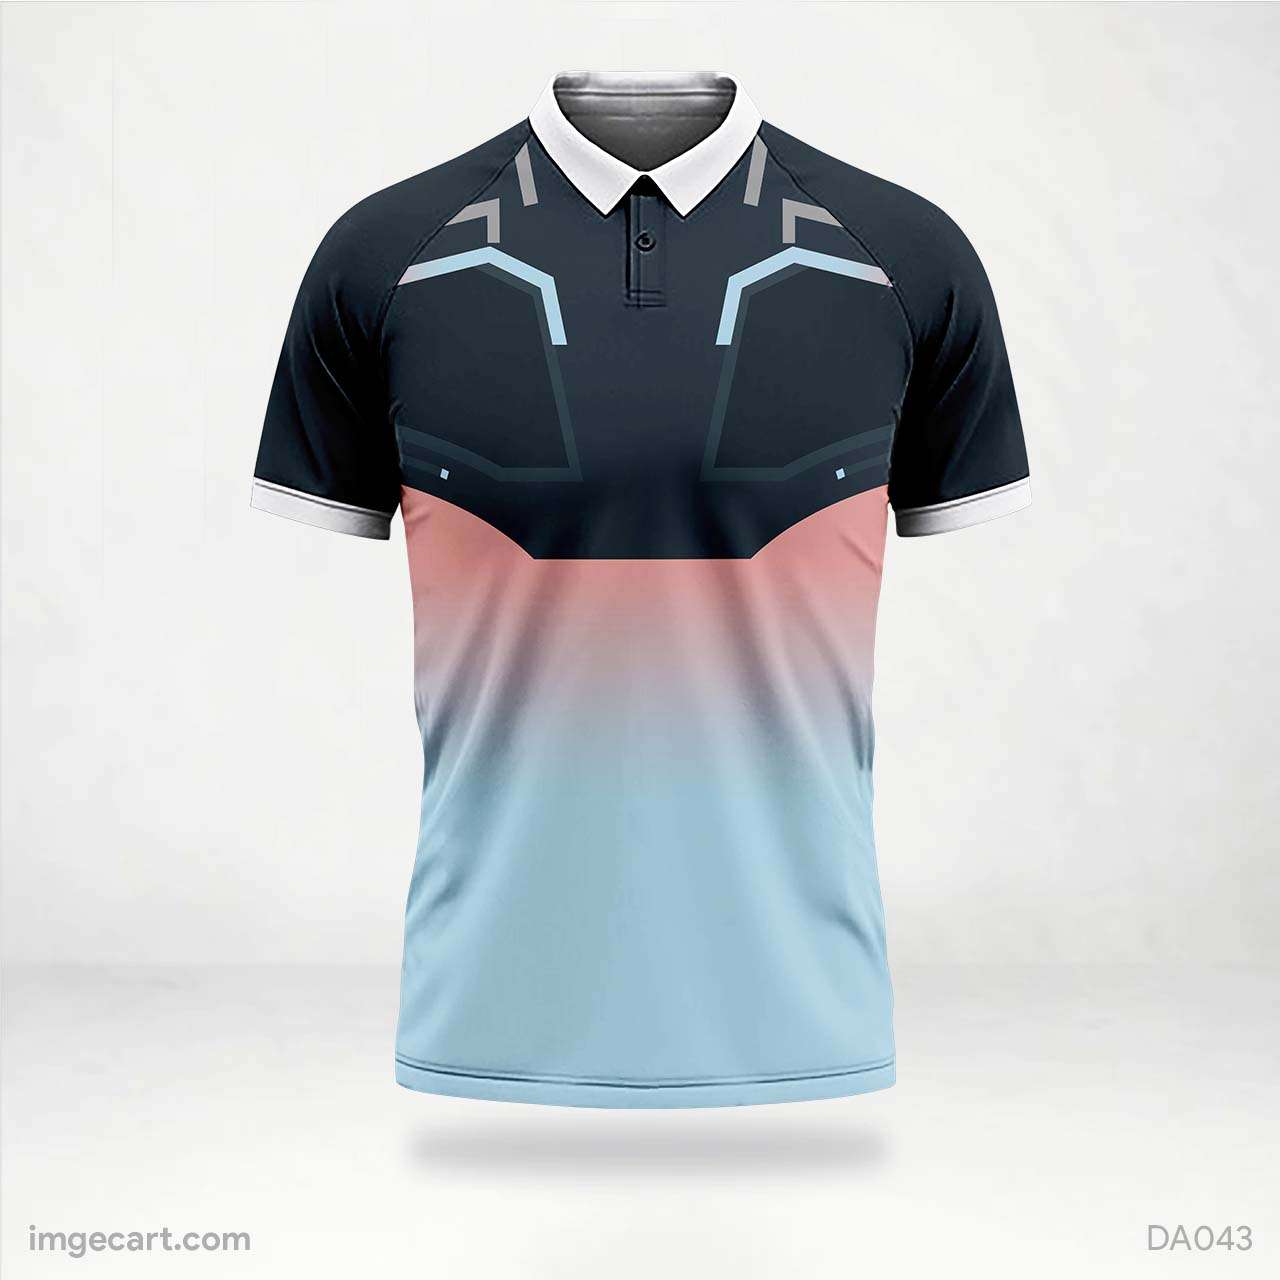 CRICKET JERSEY | Sport shirt design, Jersey design, Cricket dress